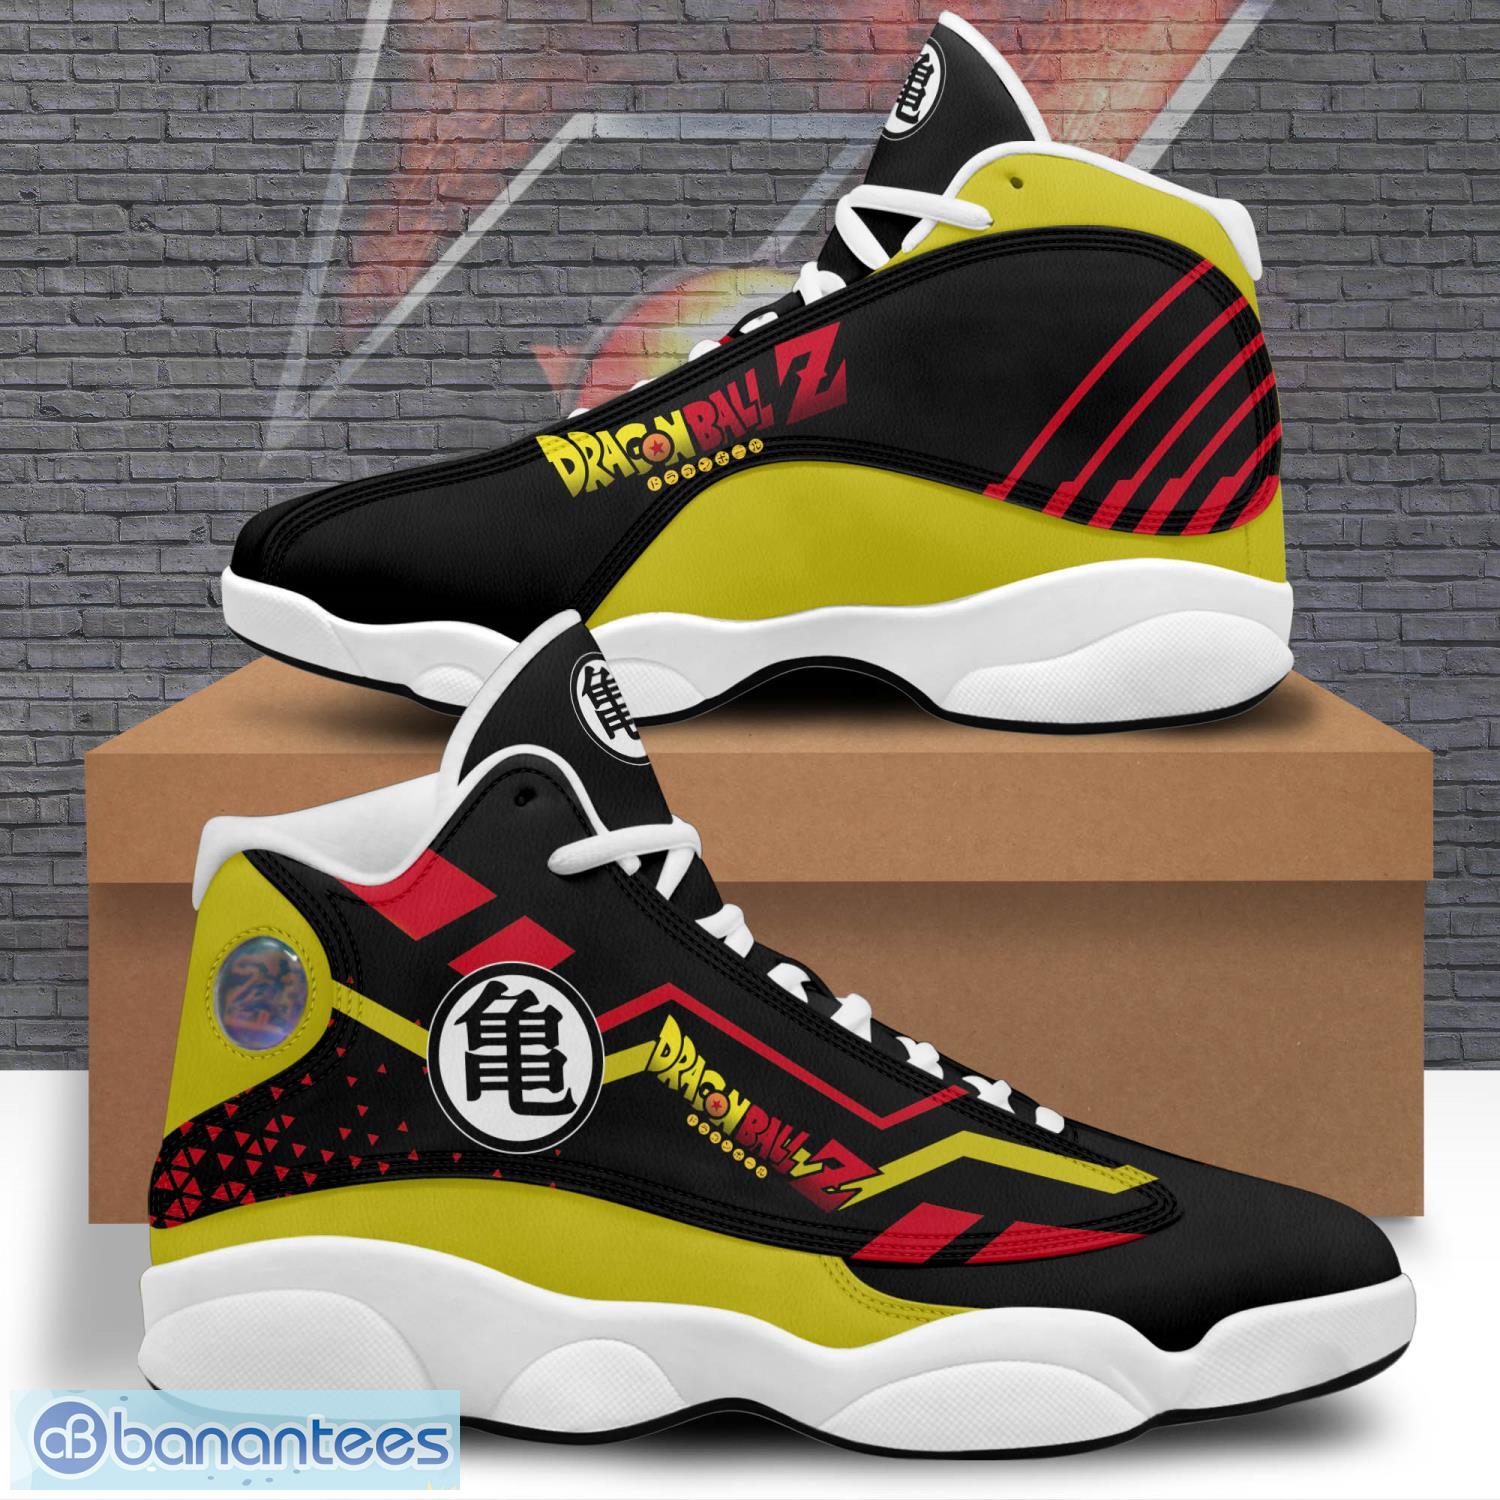 Ball Shoes Sneakers Air Jordan 13 For Fans - Banantees